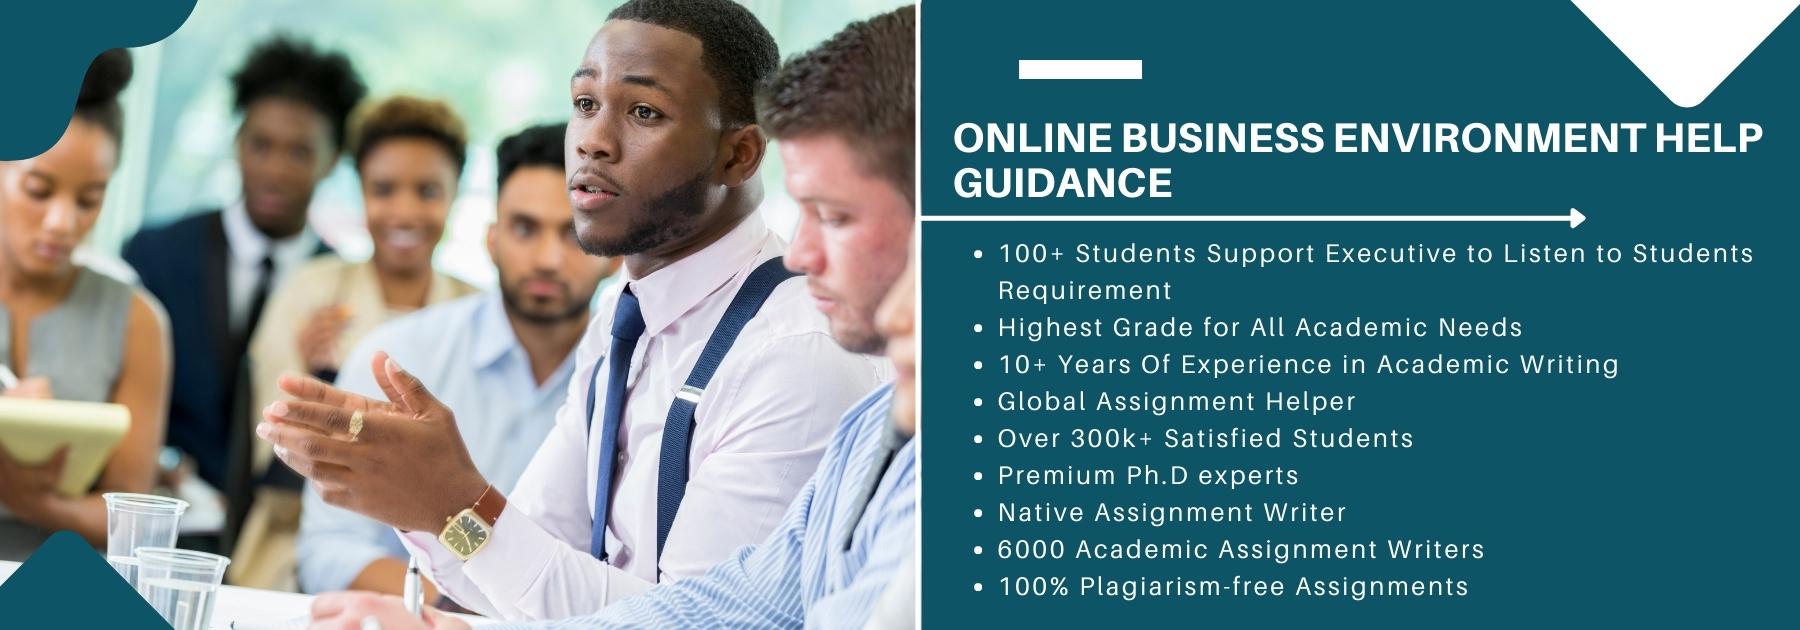 business environment guidance online